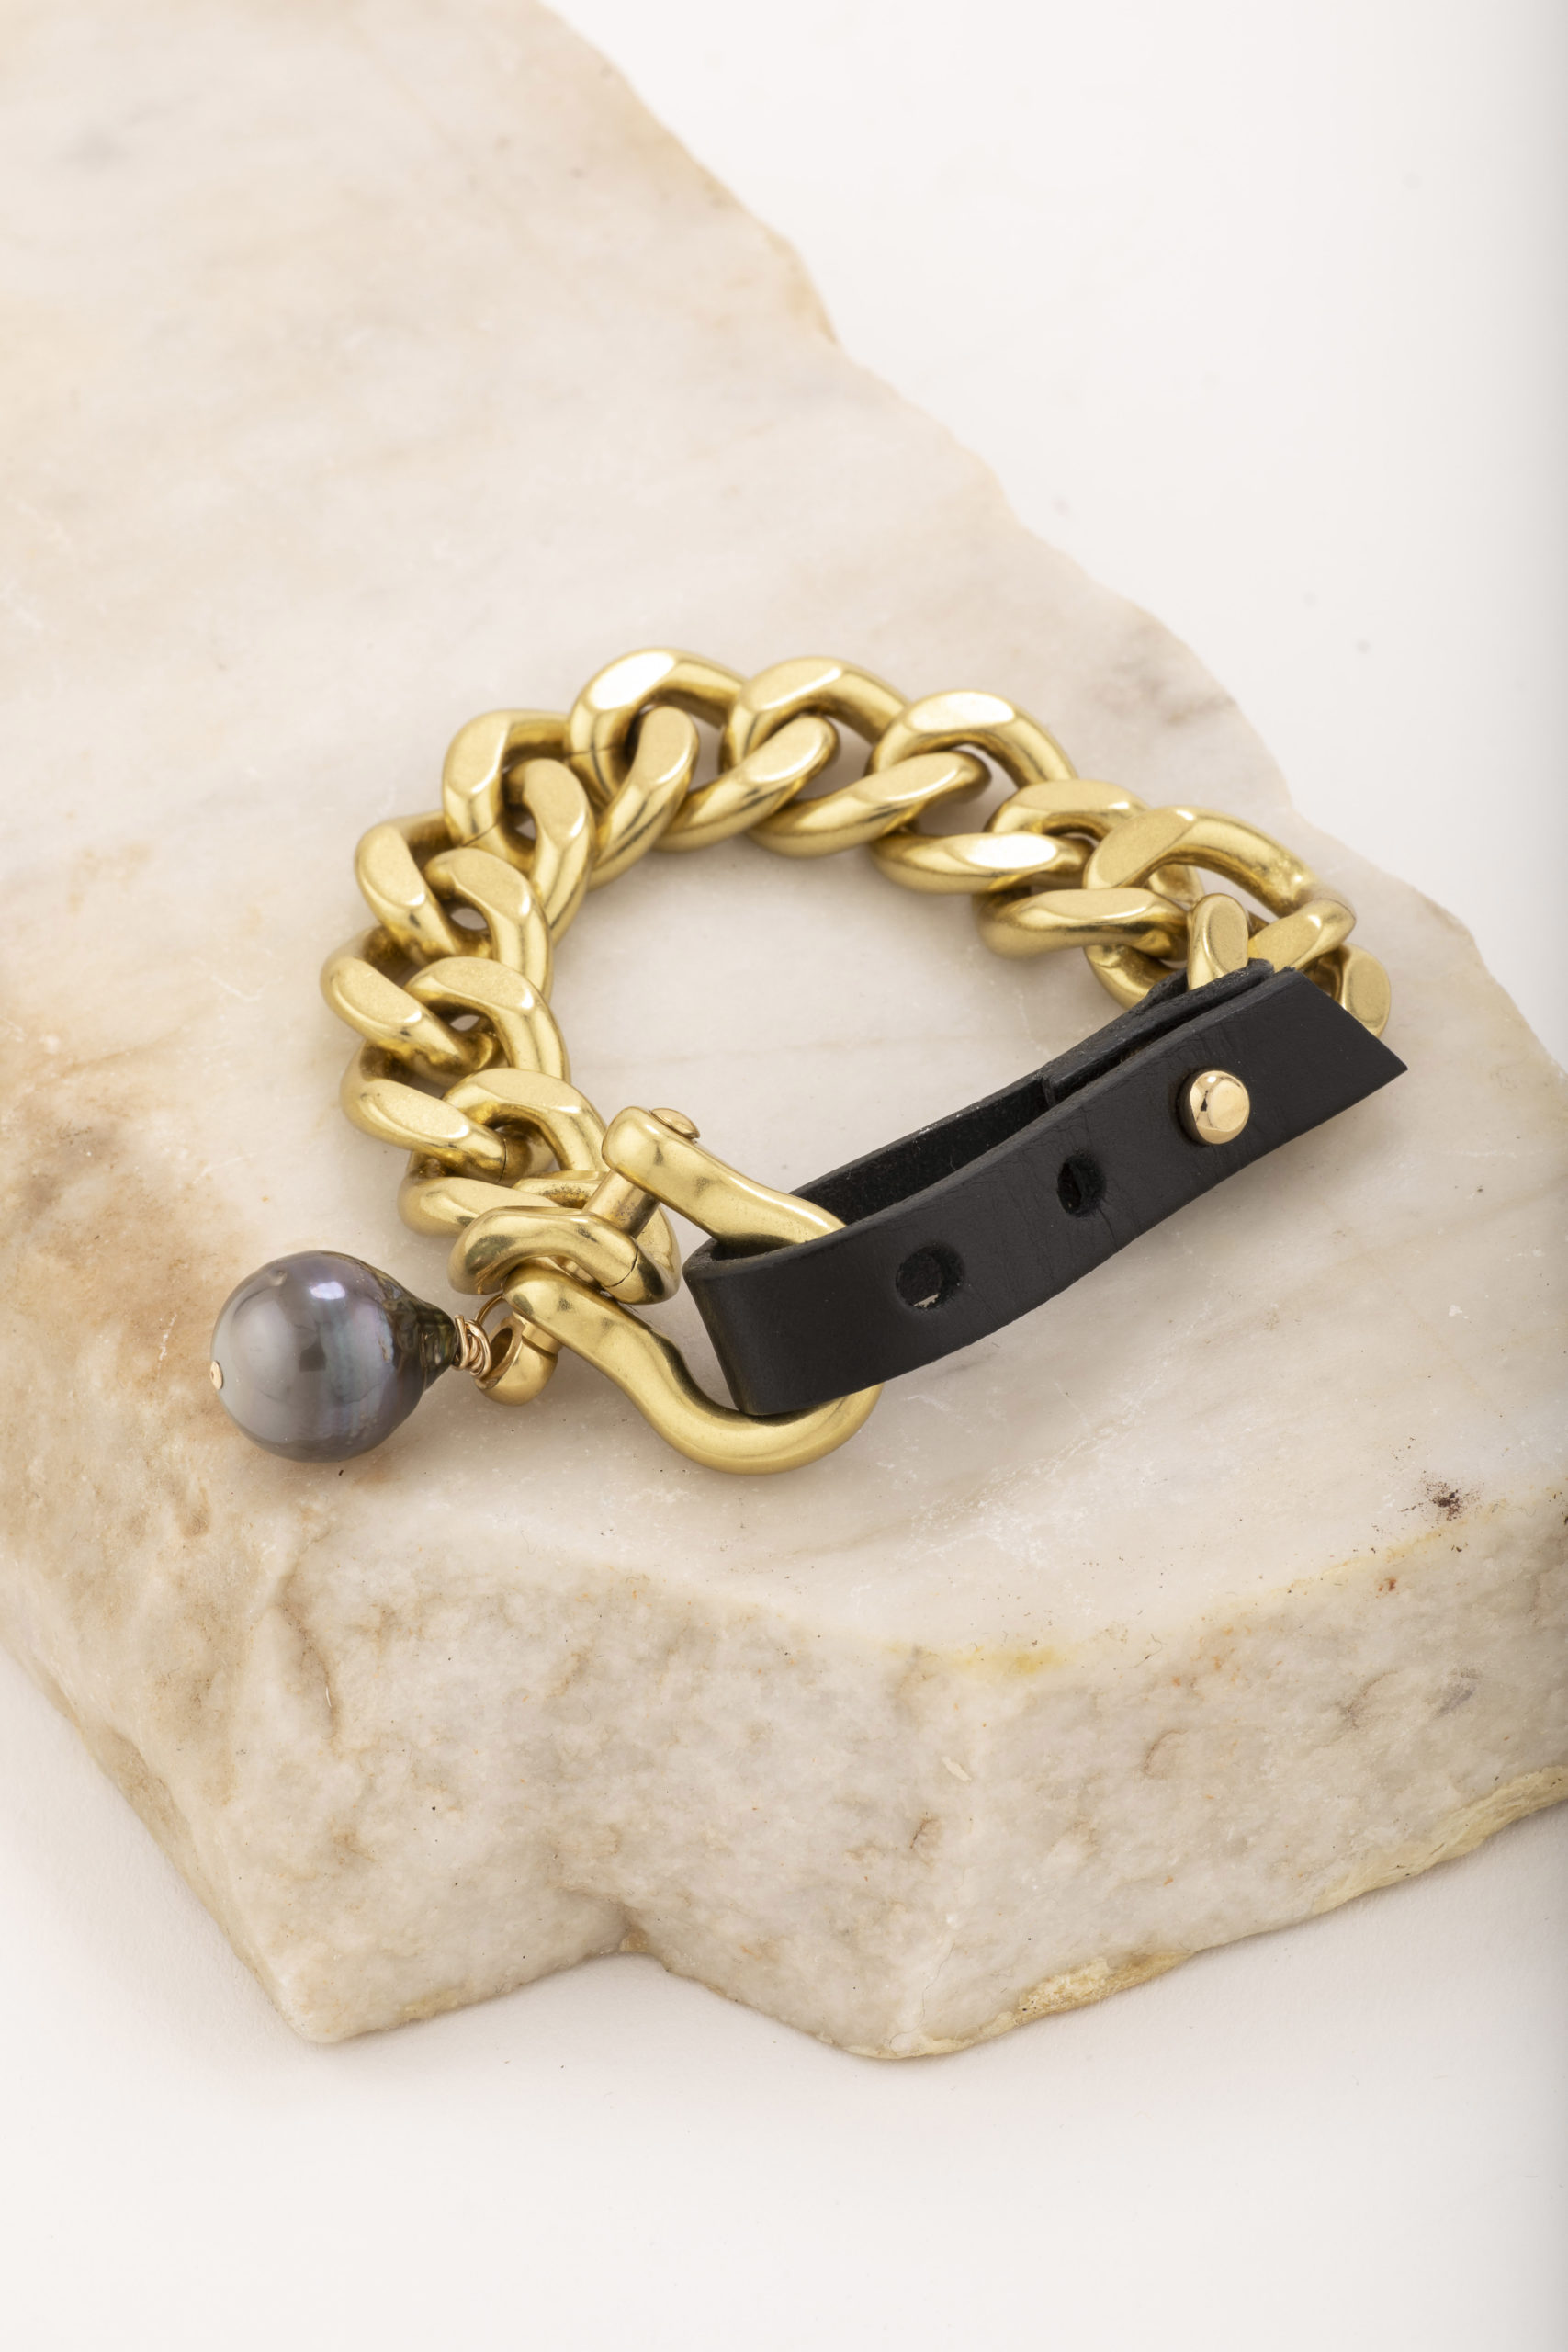 Featured image for “Parker Brass Bracelet”